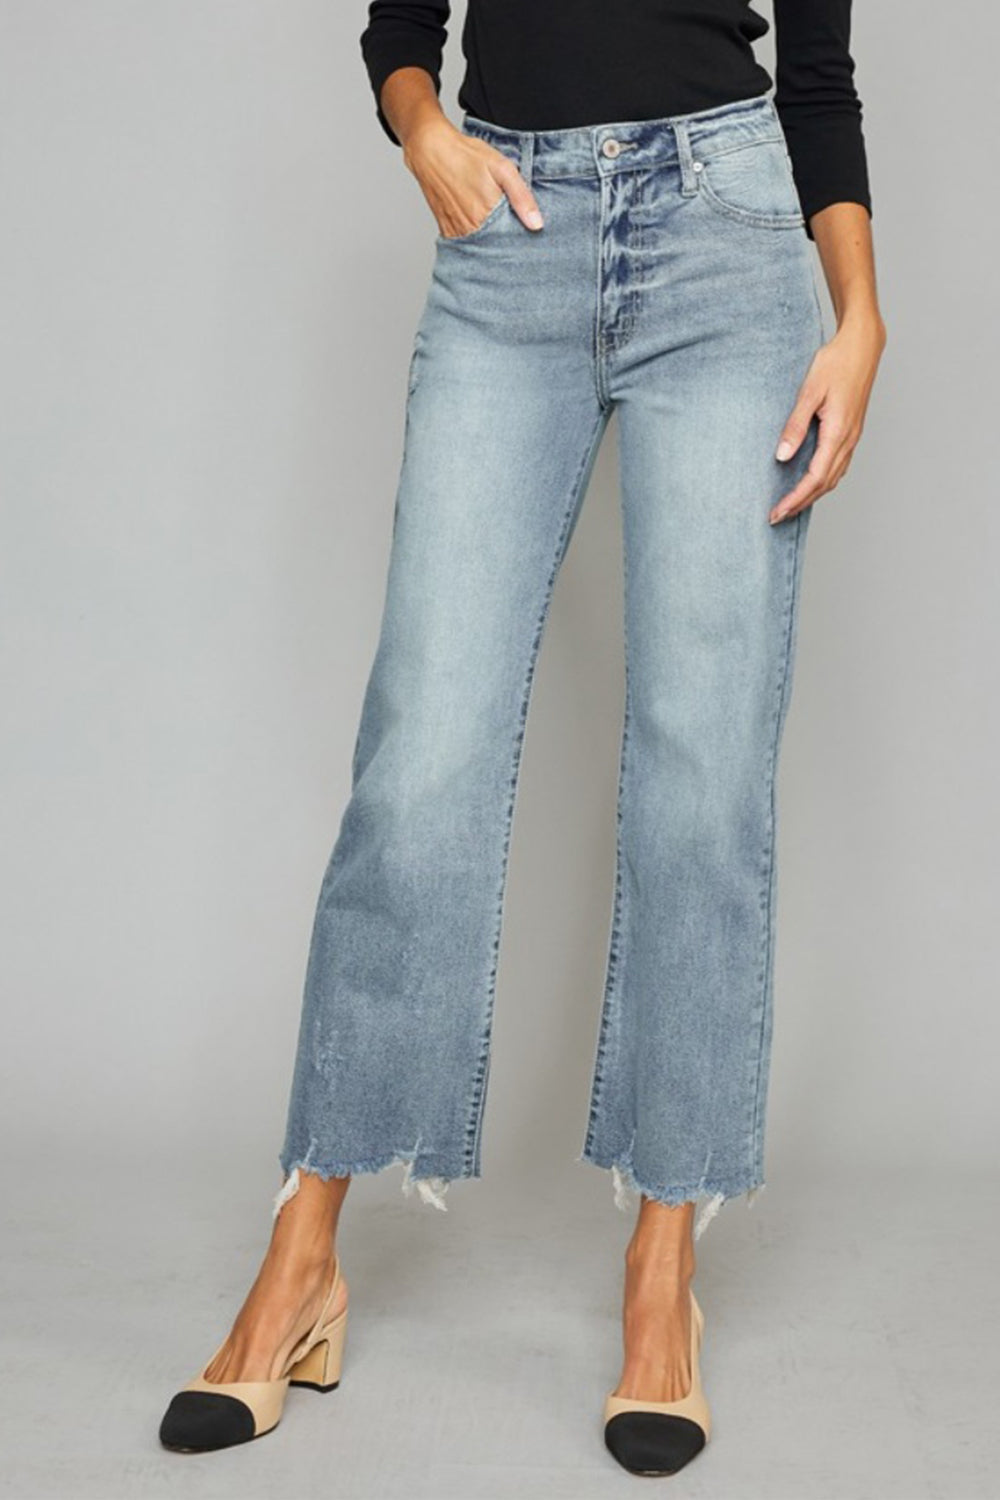 Shop Jeans | Krush Kandy Boutique | Phoenix, AZ